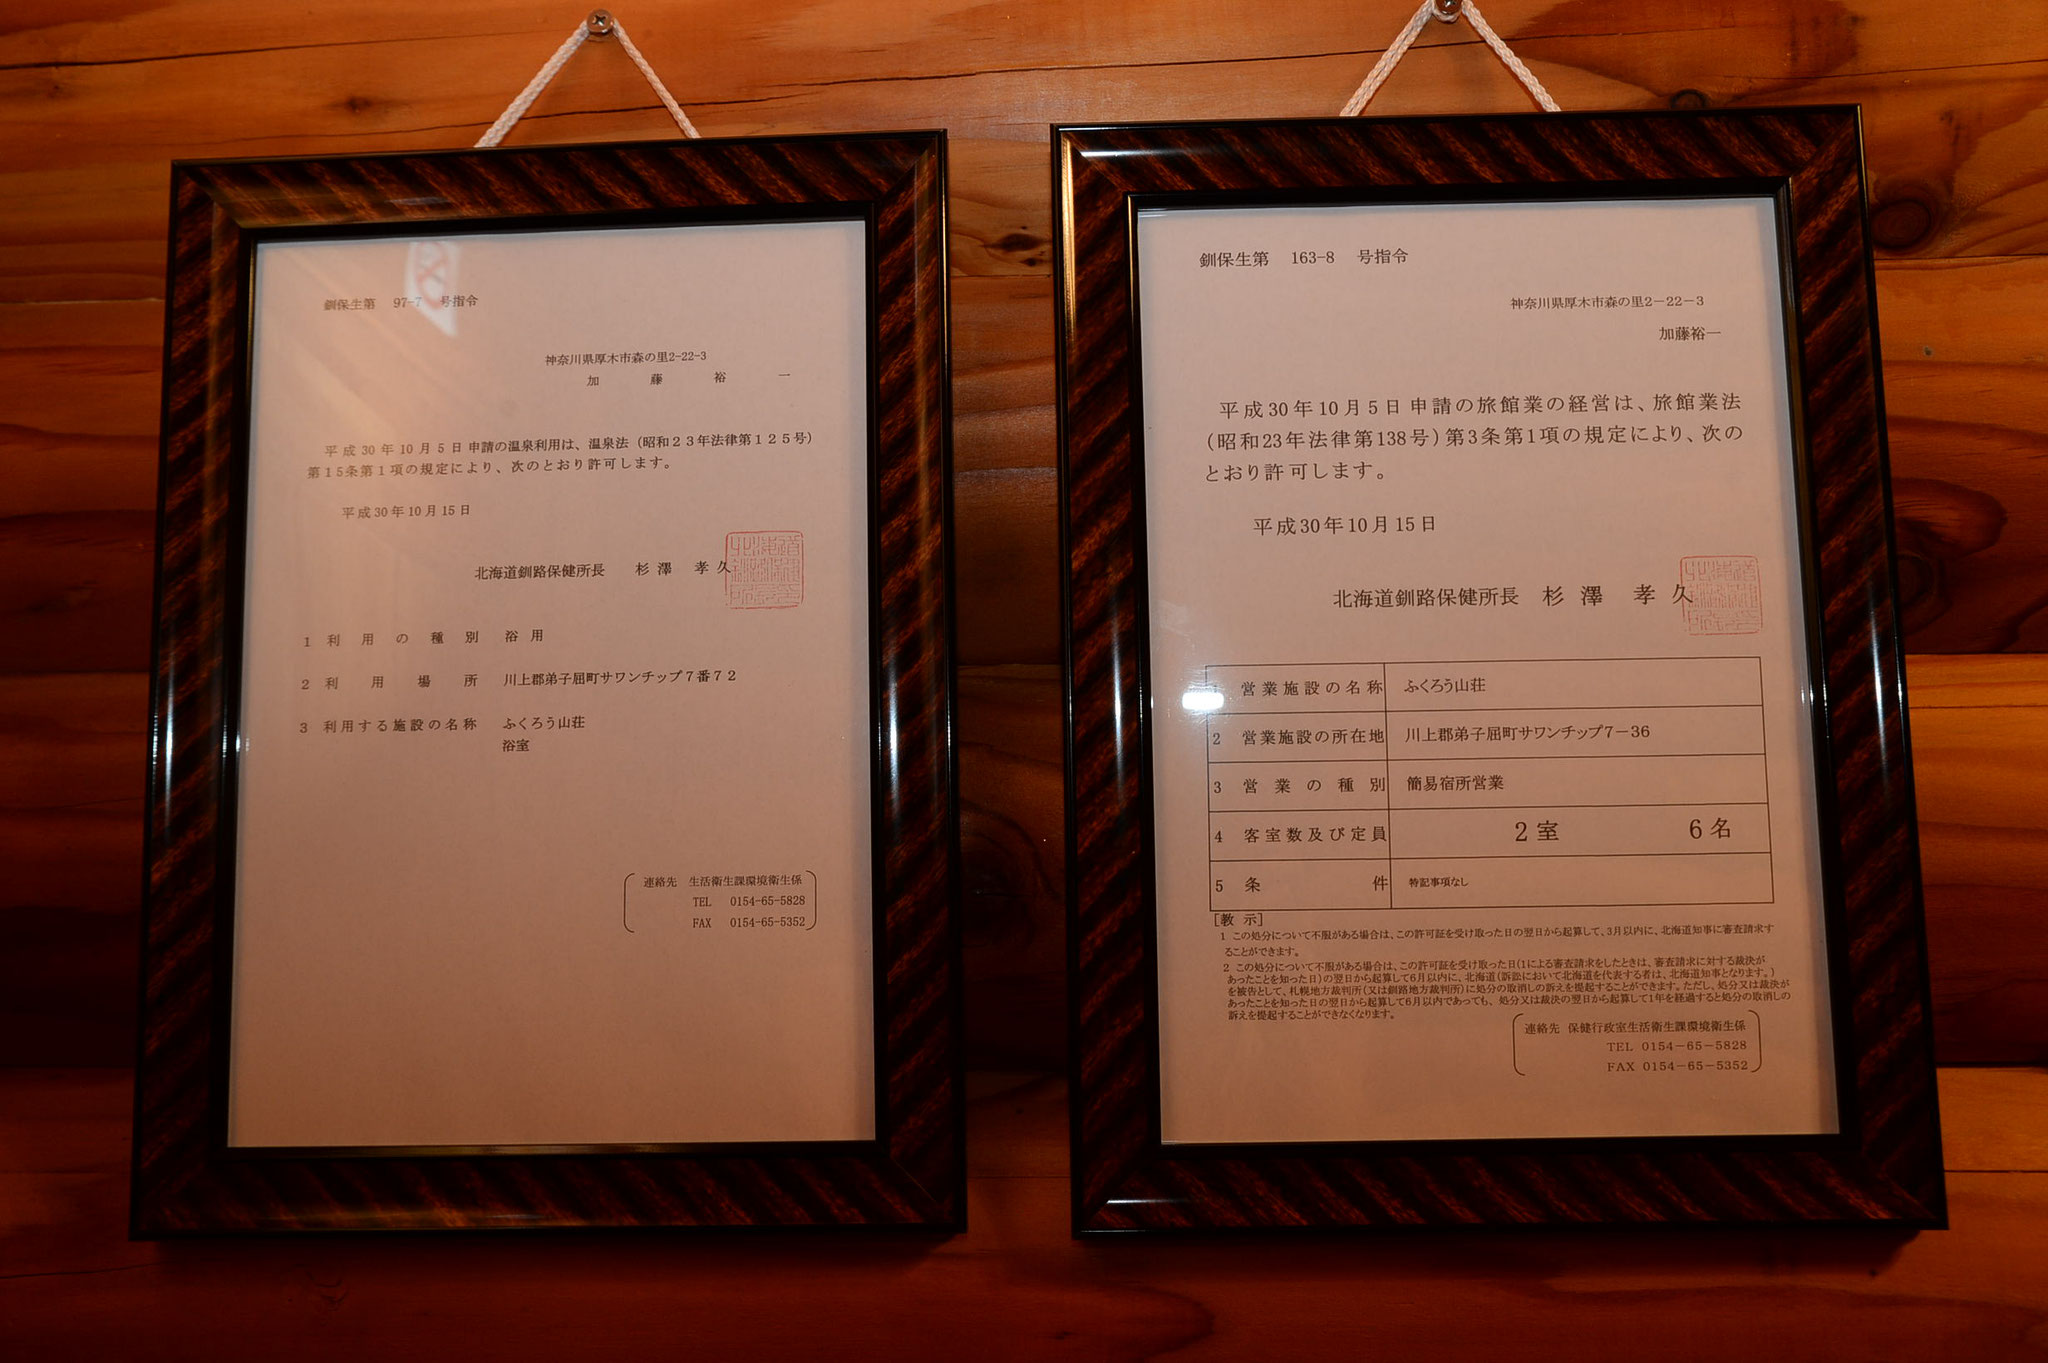 釧路保健所の温泉利用許可証と旅館業法の営業許可証です。玄関内に掲示してます。